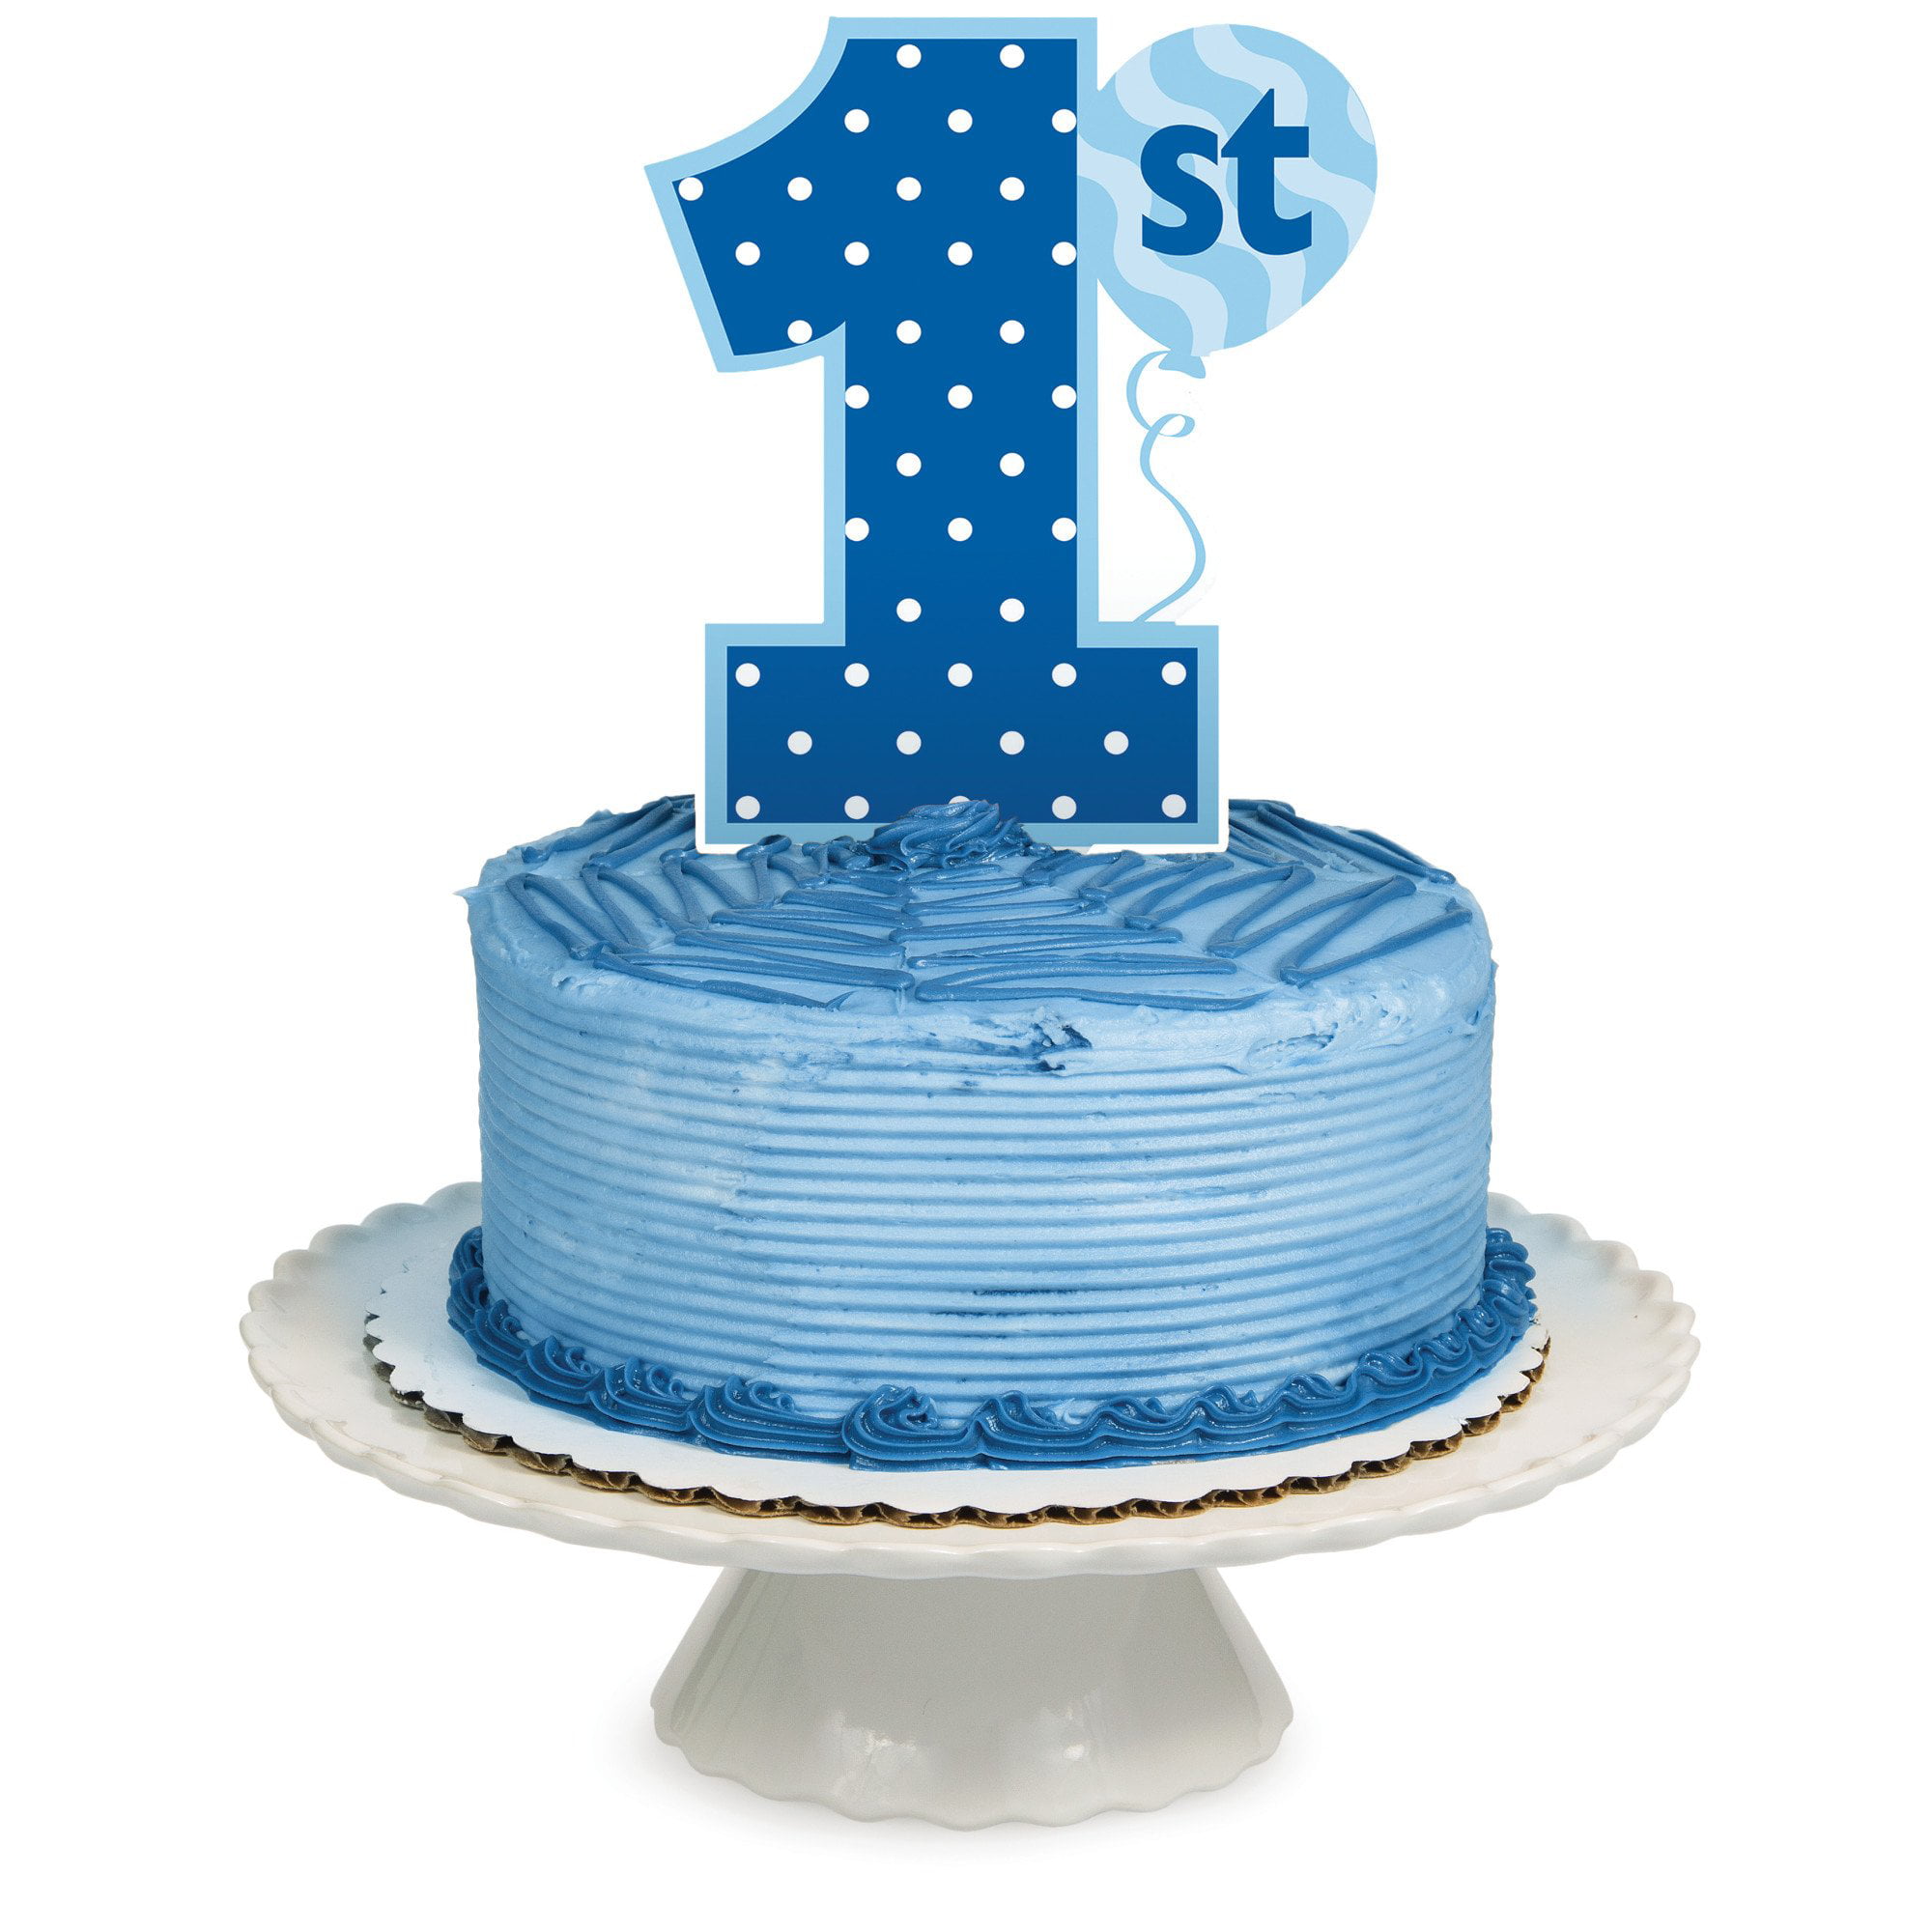 Фирме 1 год. Цифра 1 для торта голубая. Торт 1 yas. Торт 1 год на прозрачном фоне. Торт на 1 год организации.